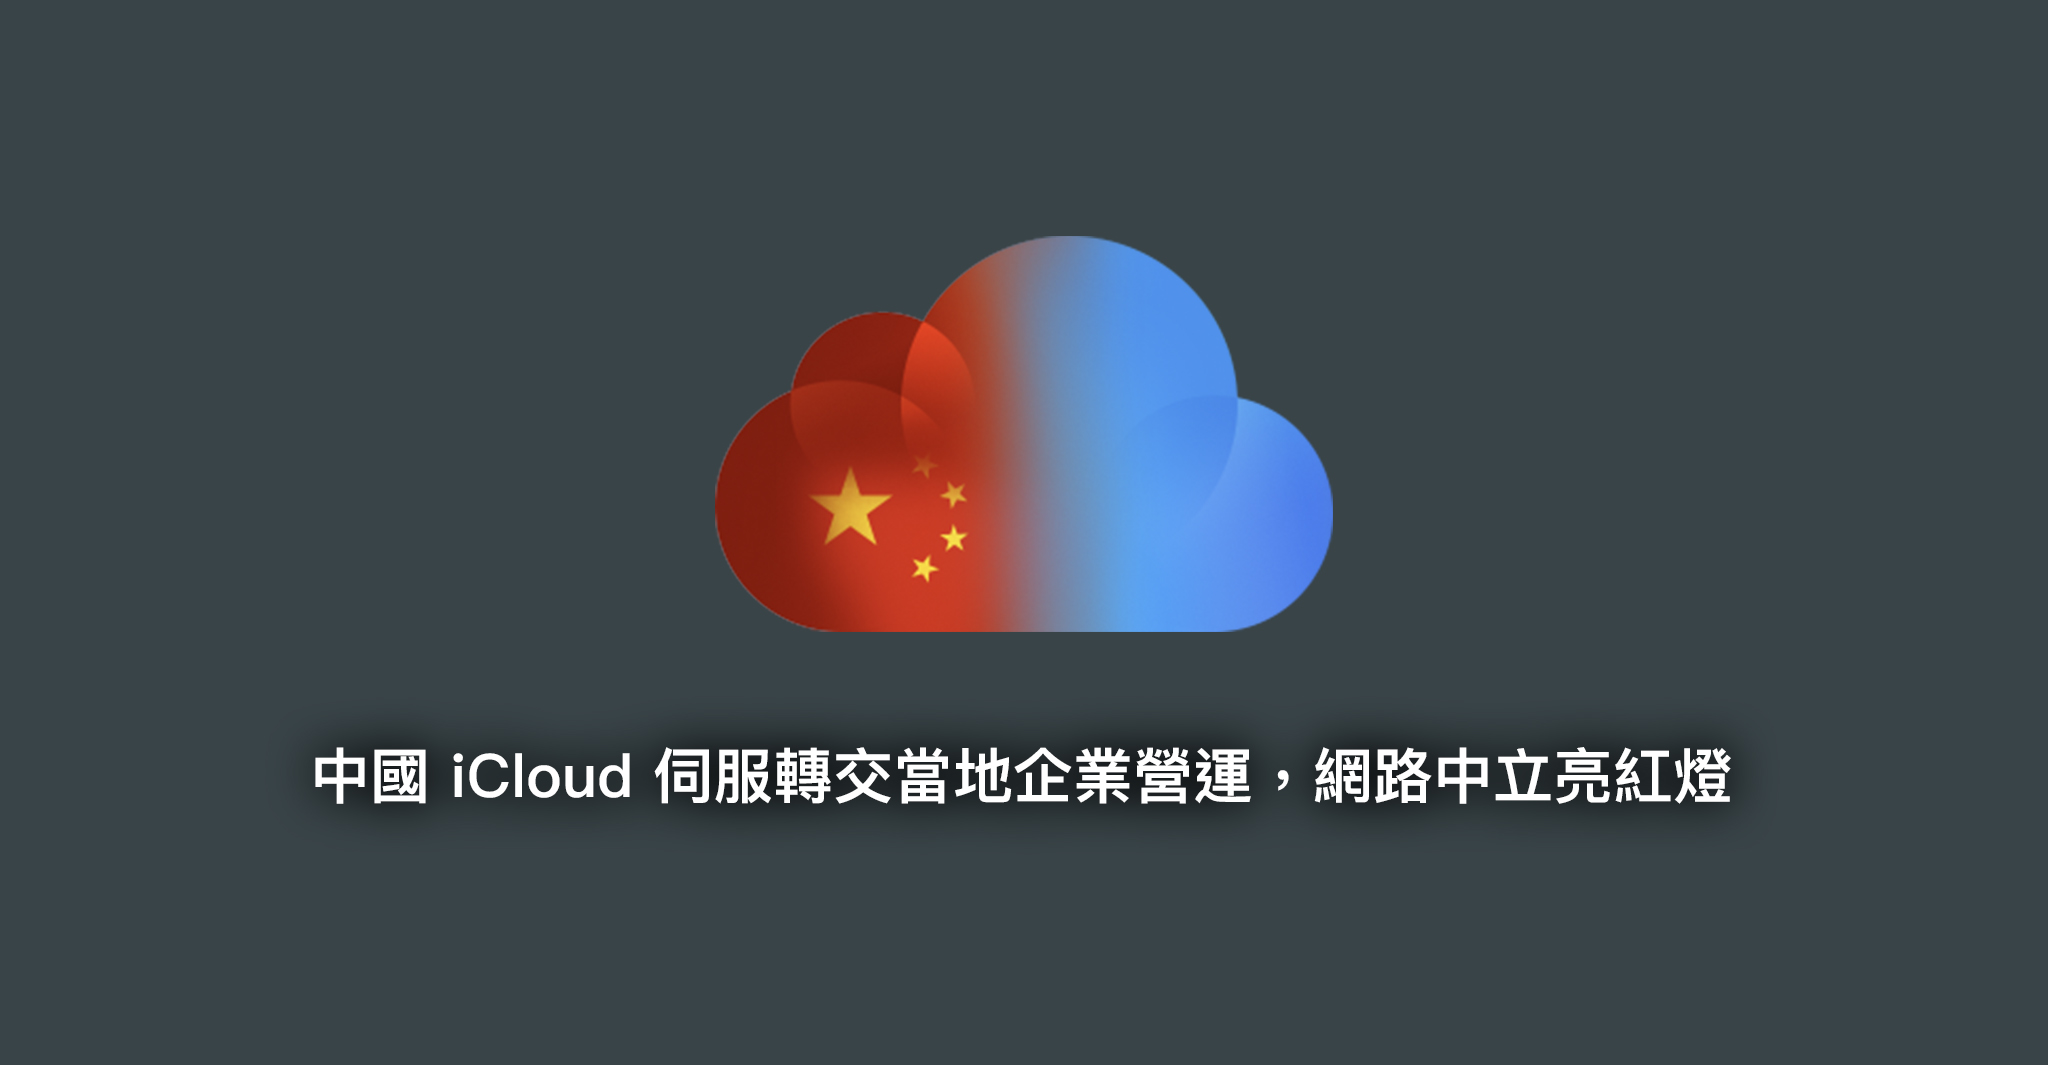 中國 iCloud 伺服轉交當地企業營運，網路中立亮紅燈